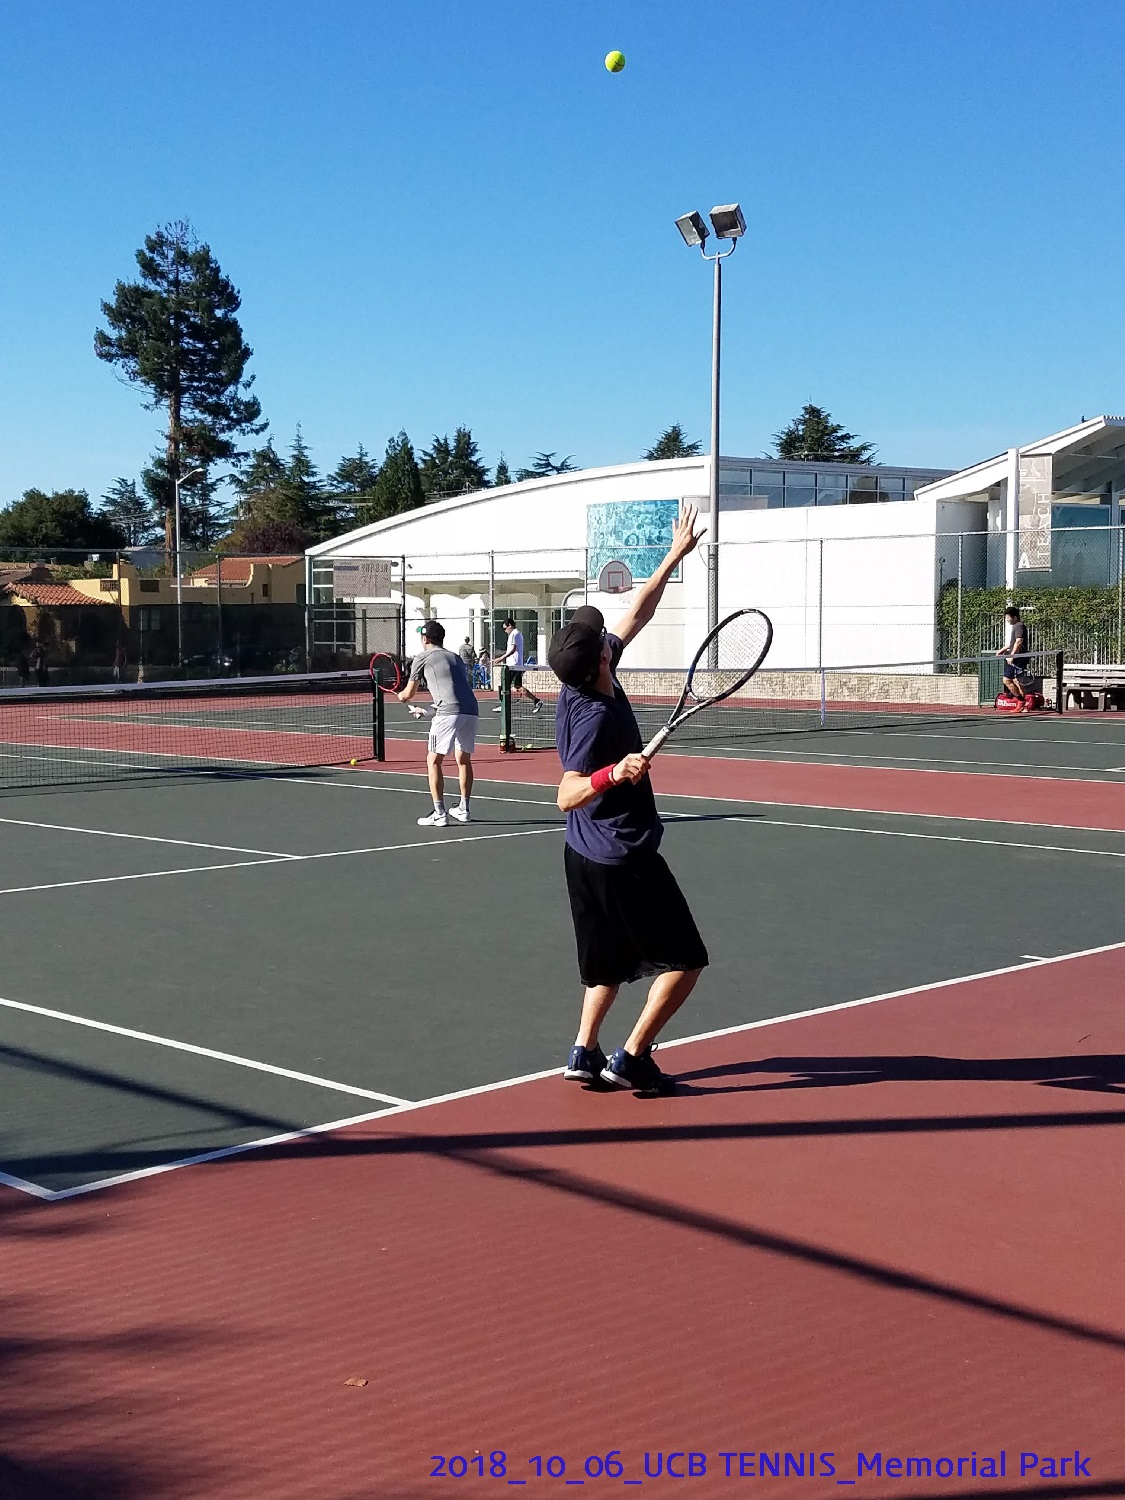 resized_2018_10_06_UCB Tennis at Memorial Park_100242.jpg